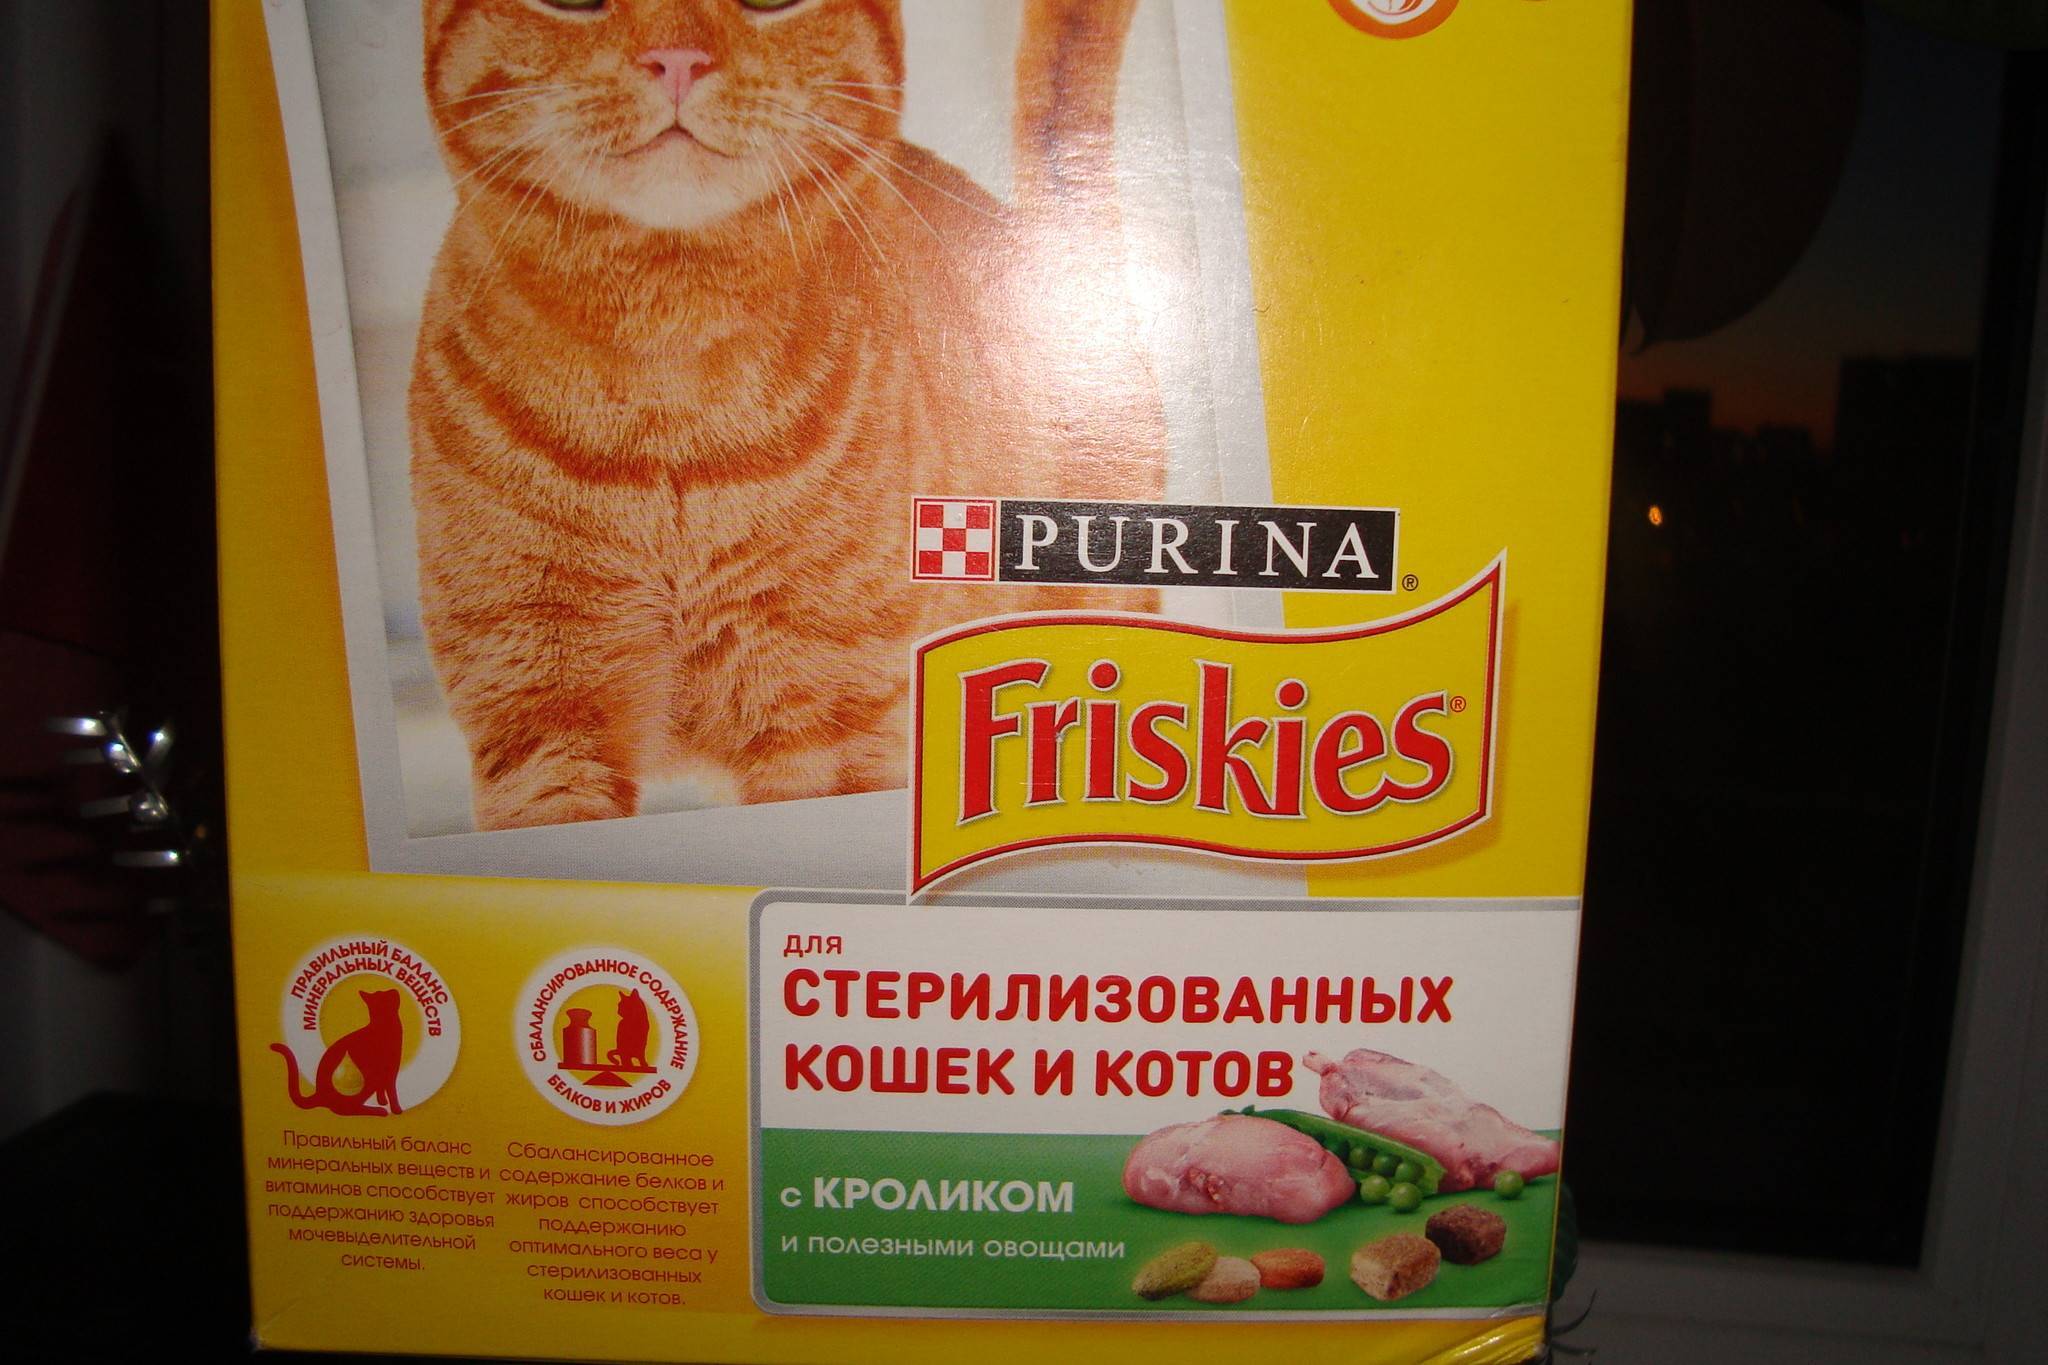 Корм для кошек «friskies» («фрискис»): описание линейки, анализ состава, преимущества и недостатки питания